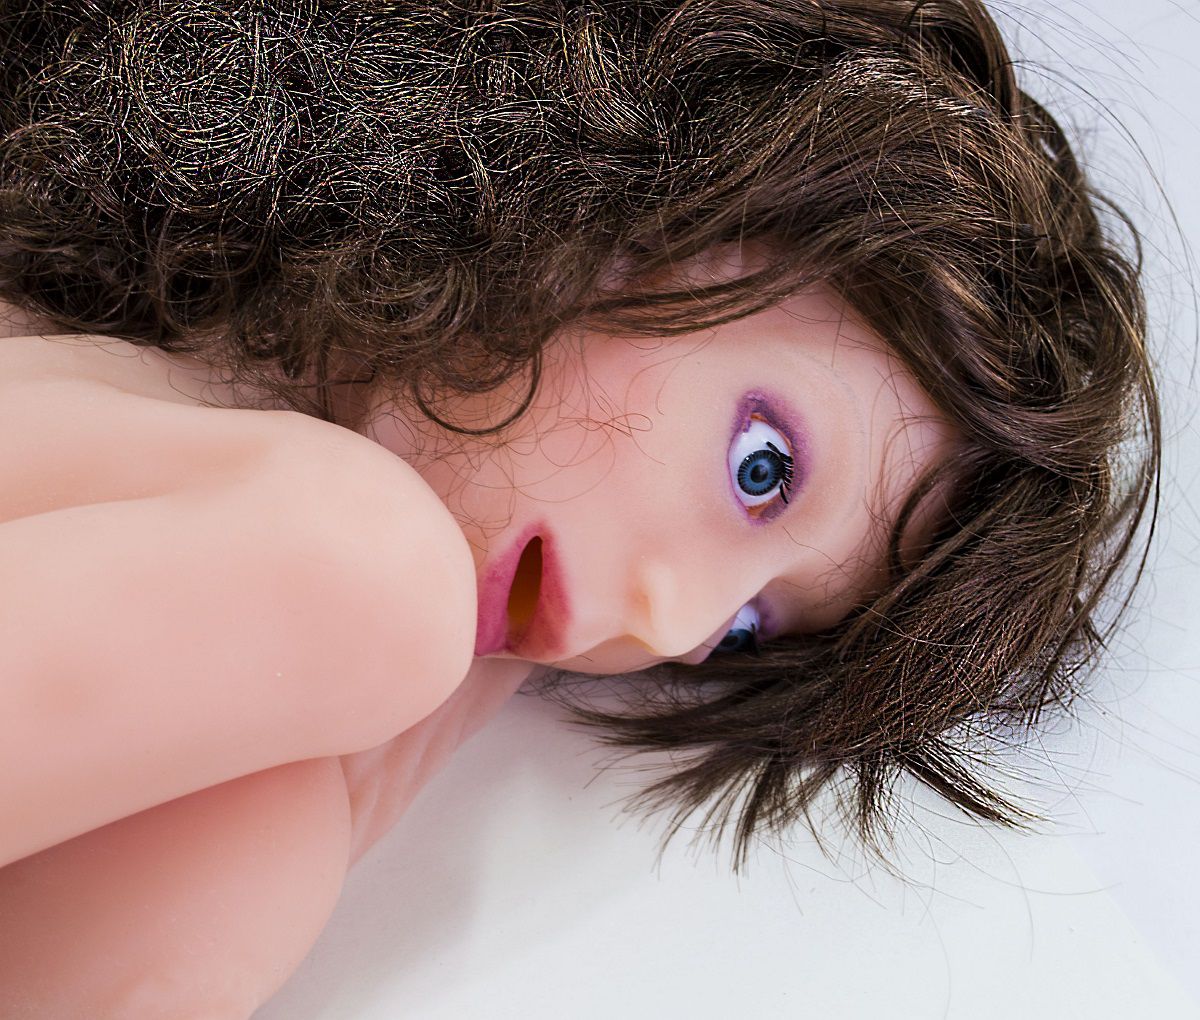 Надувная кукла-мужчина - Just-In Beaver Love Doll для раскрепощённых женщин